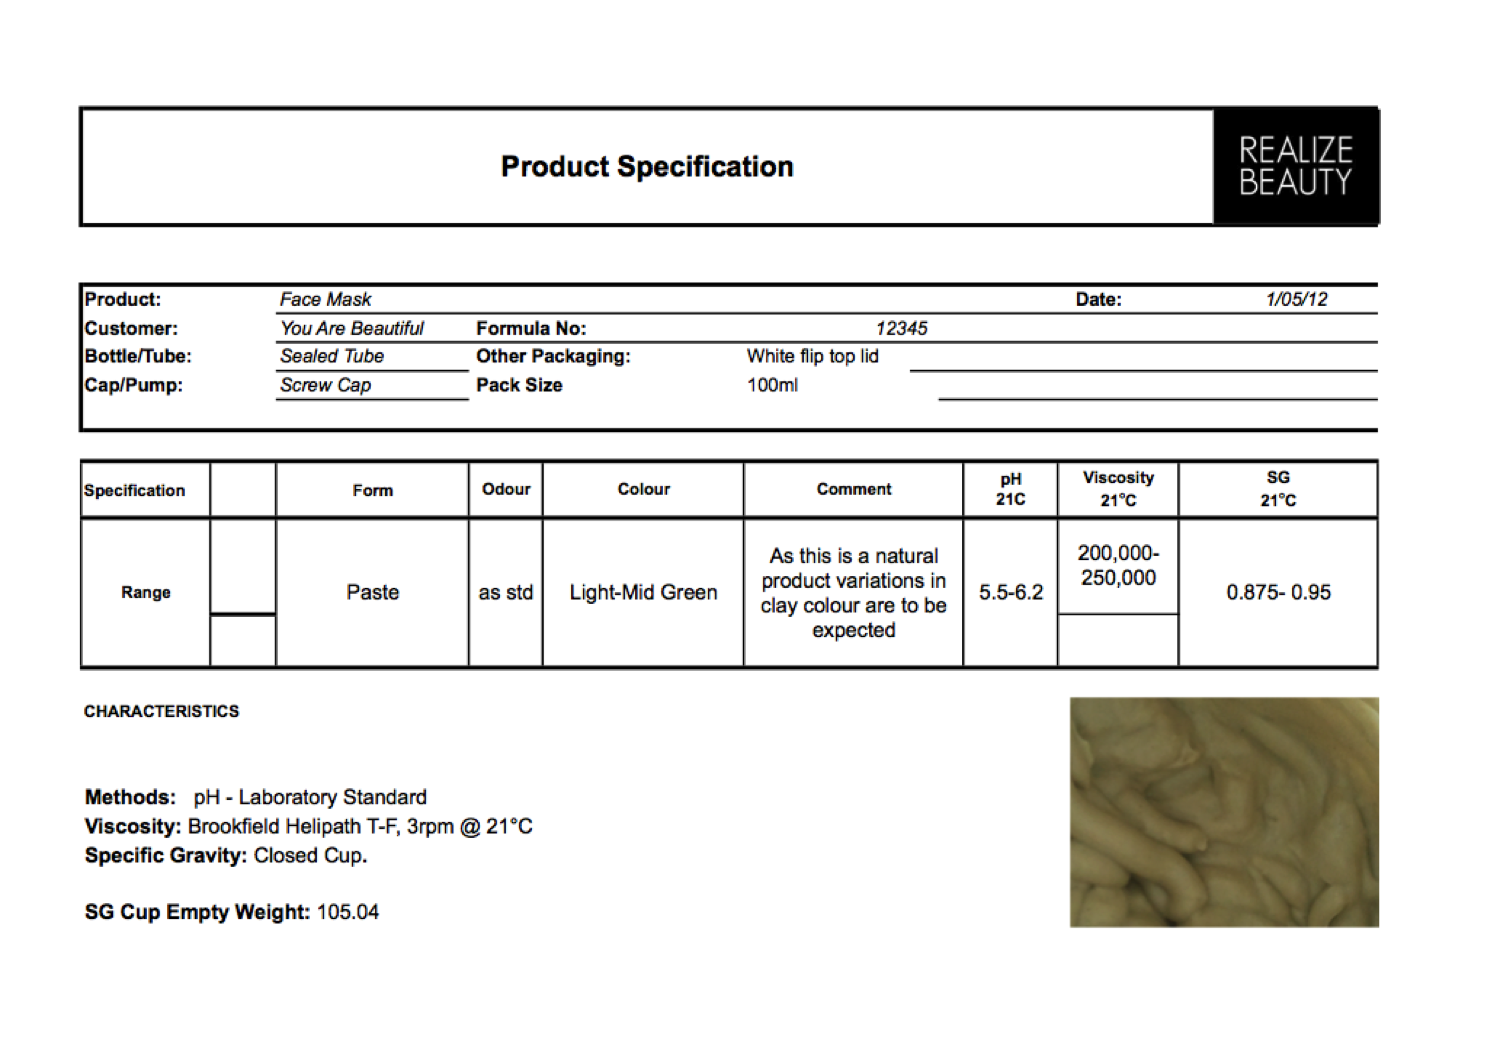 Production Specification. Product Specification Template. Шаблон Specification. Product specification